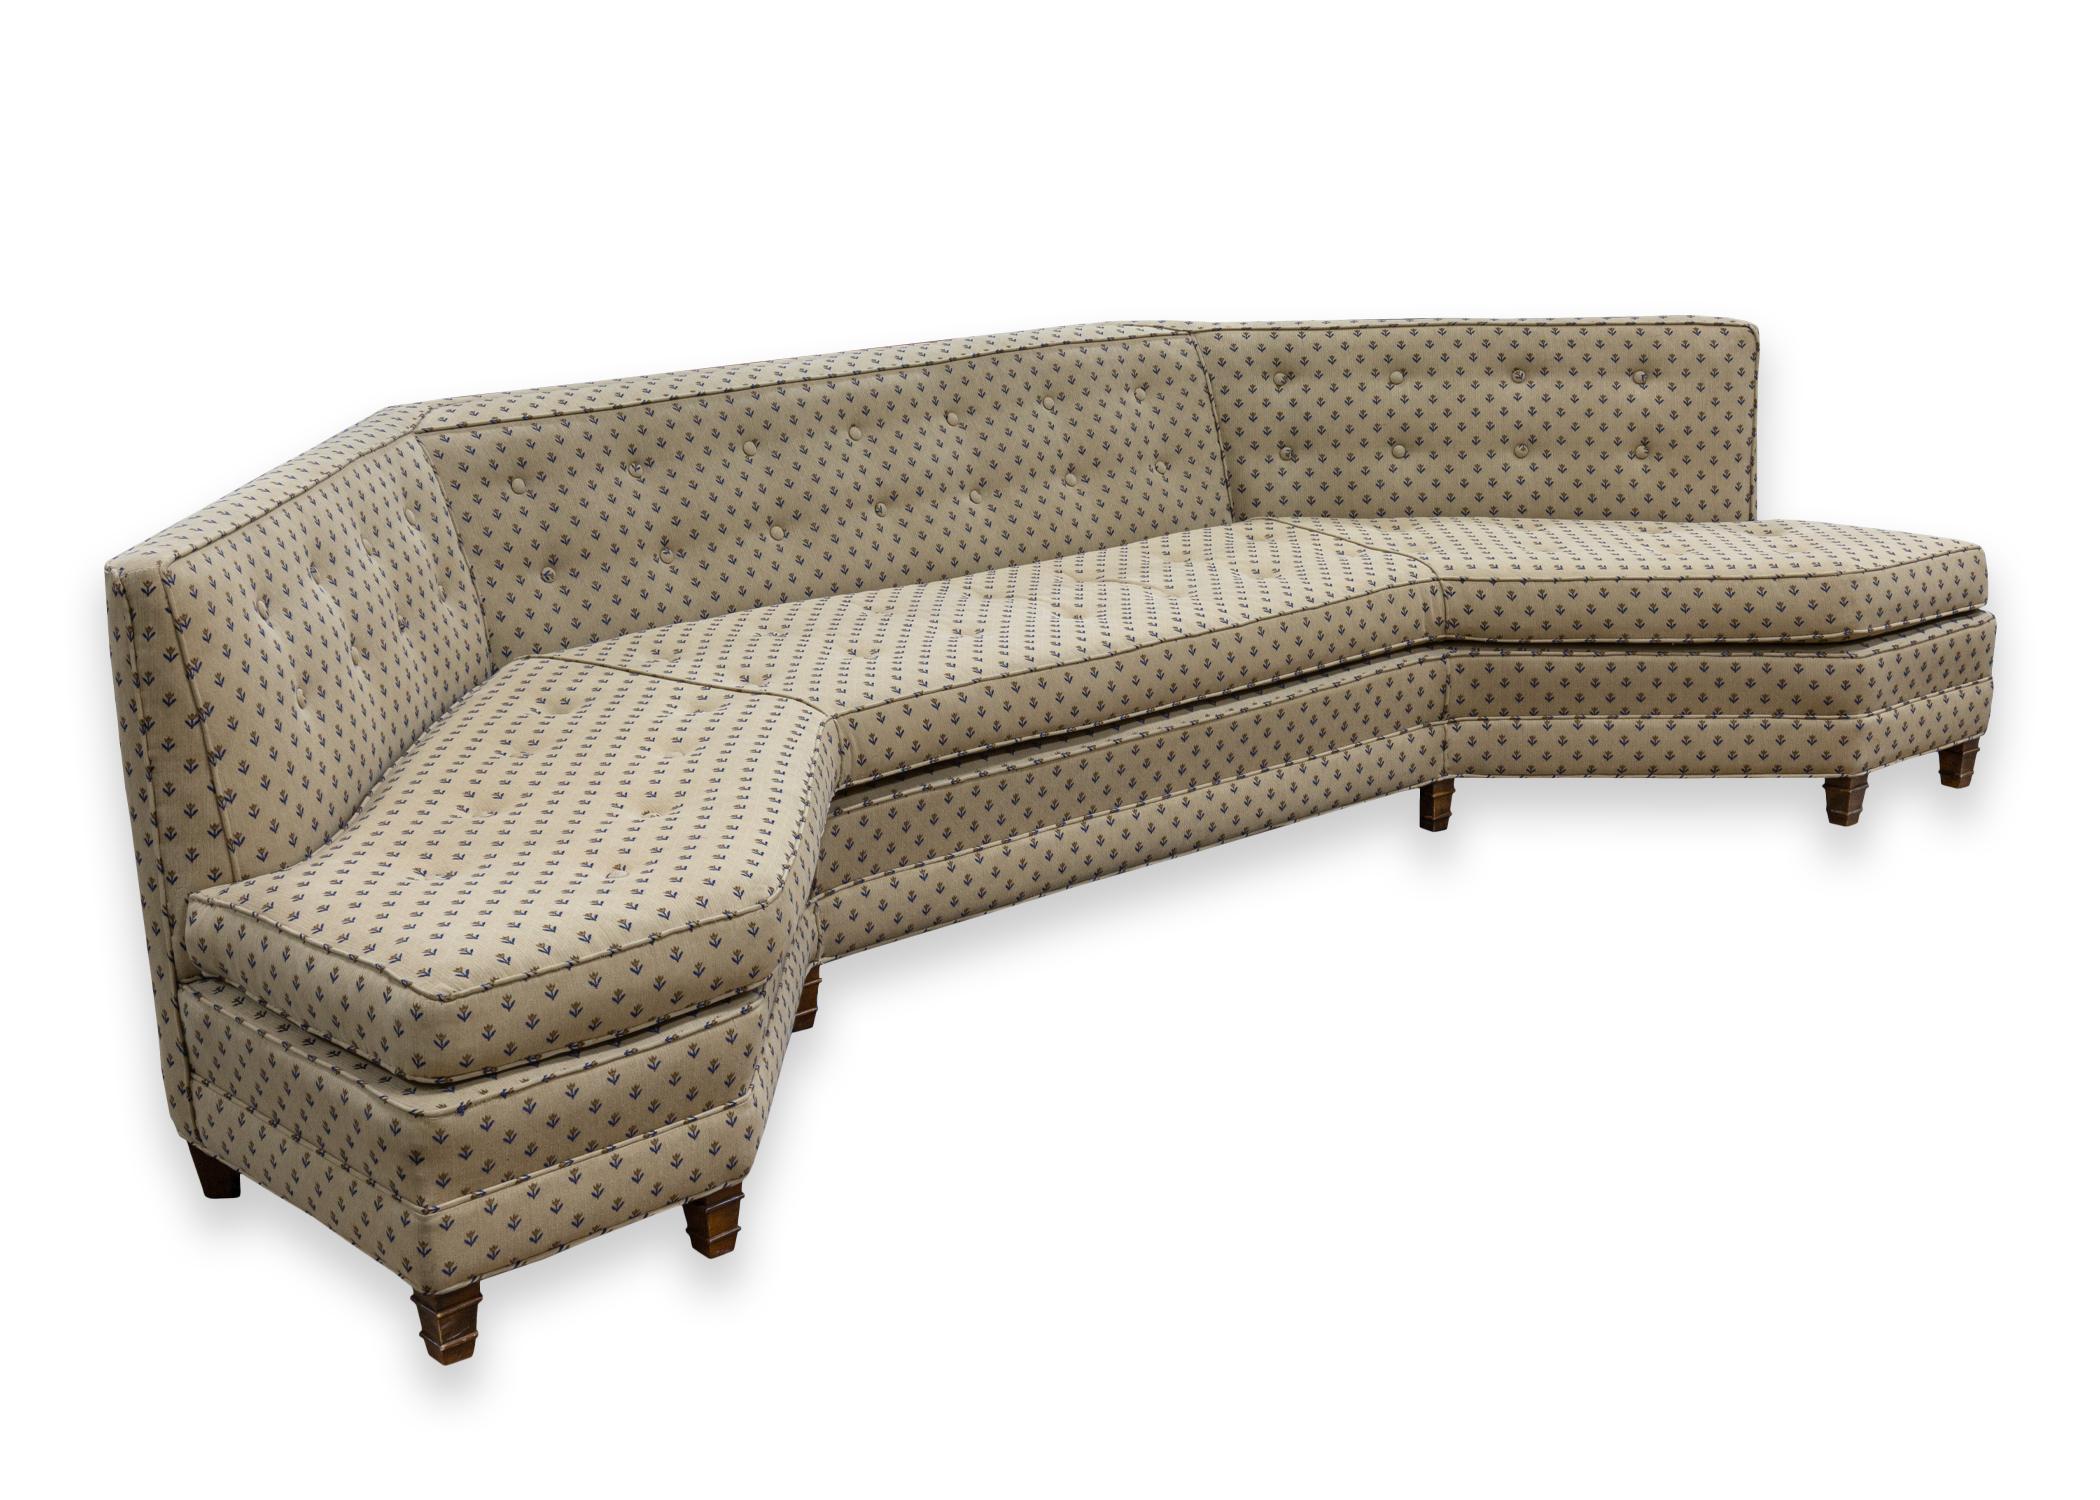 Ein geschwungenes Sofa nach dem Vorbild von Harvey Probber. Ein wunderschönes modernes Sofa aus der Mitte des Jahrhunderts mit einer einzigartigen geschwungenen Form und einem einzigartigen Design. Dieses Stück besticht durch seine Kombination aus